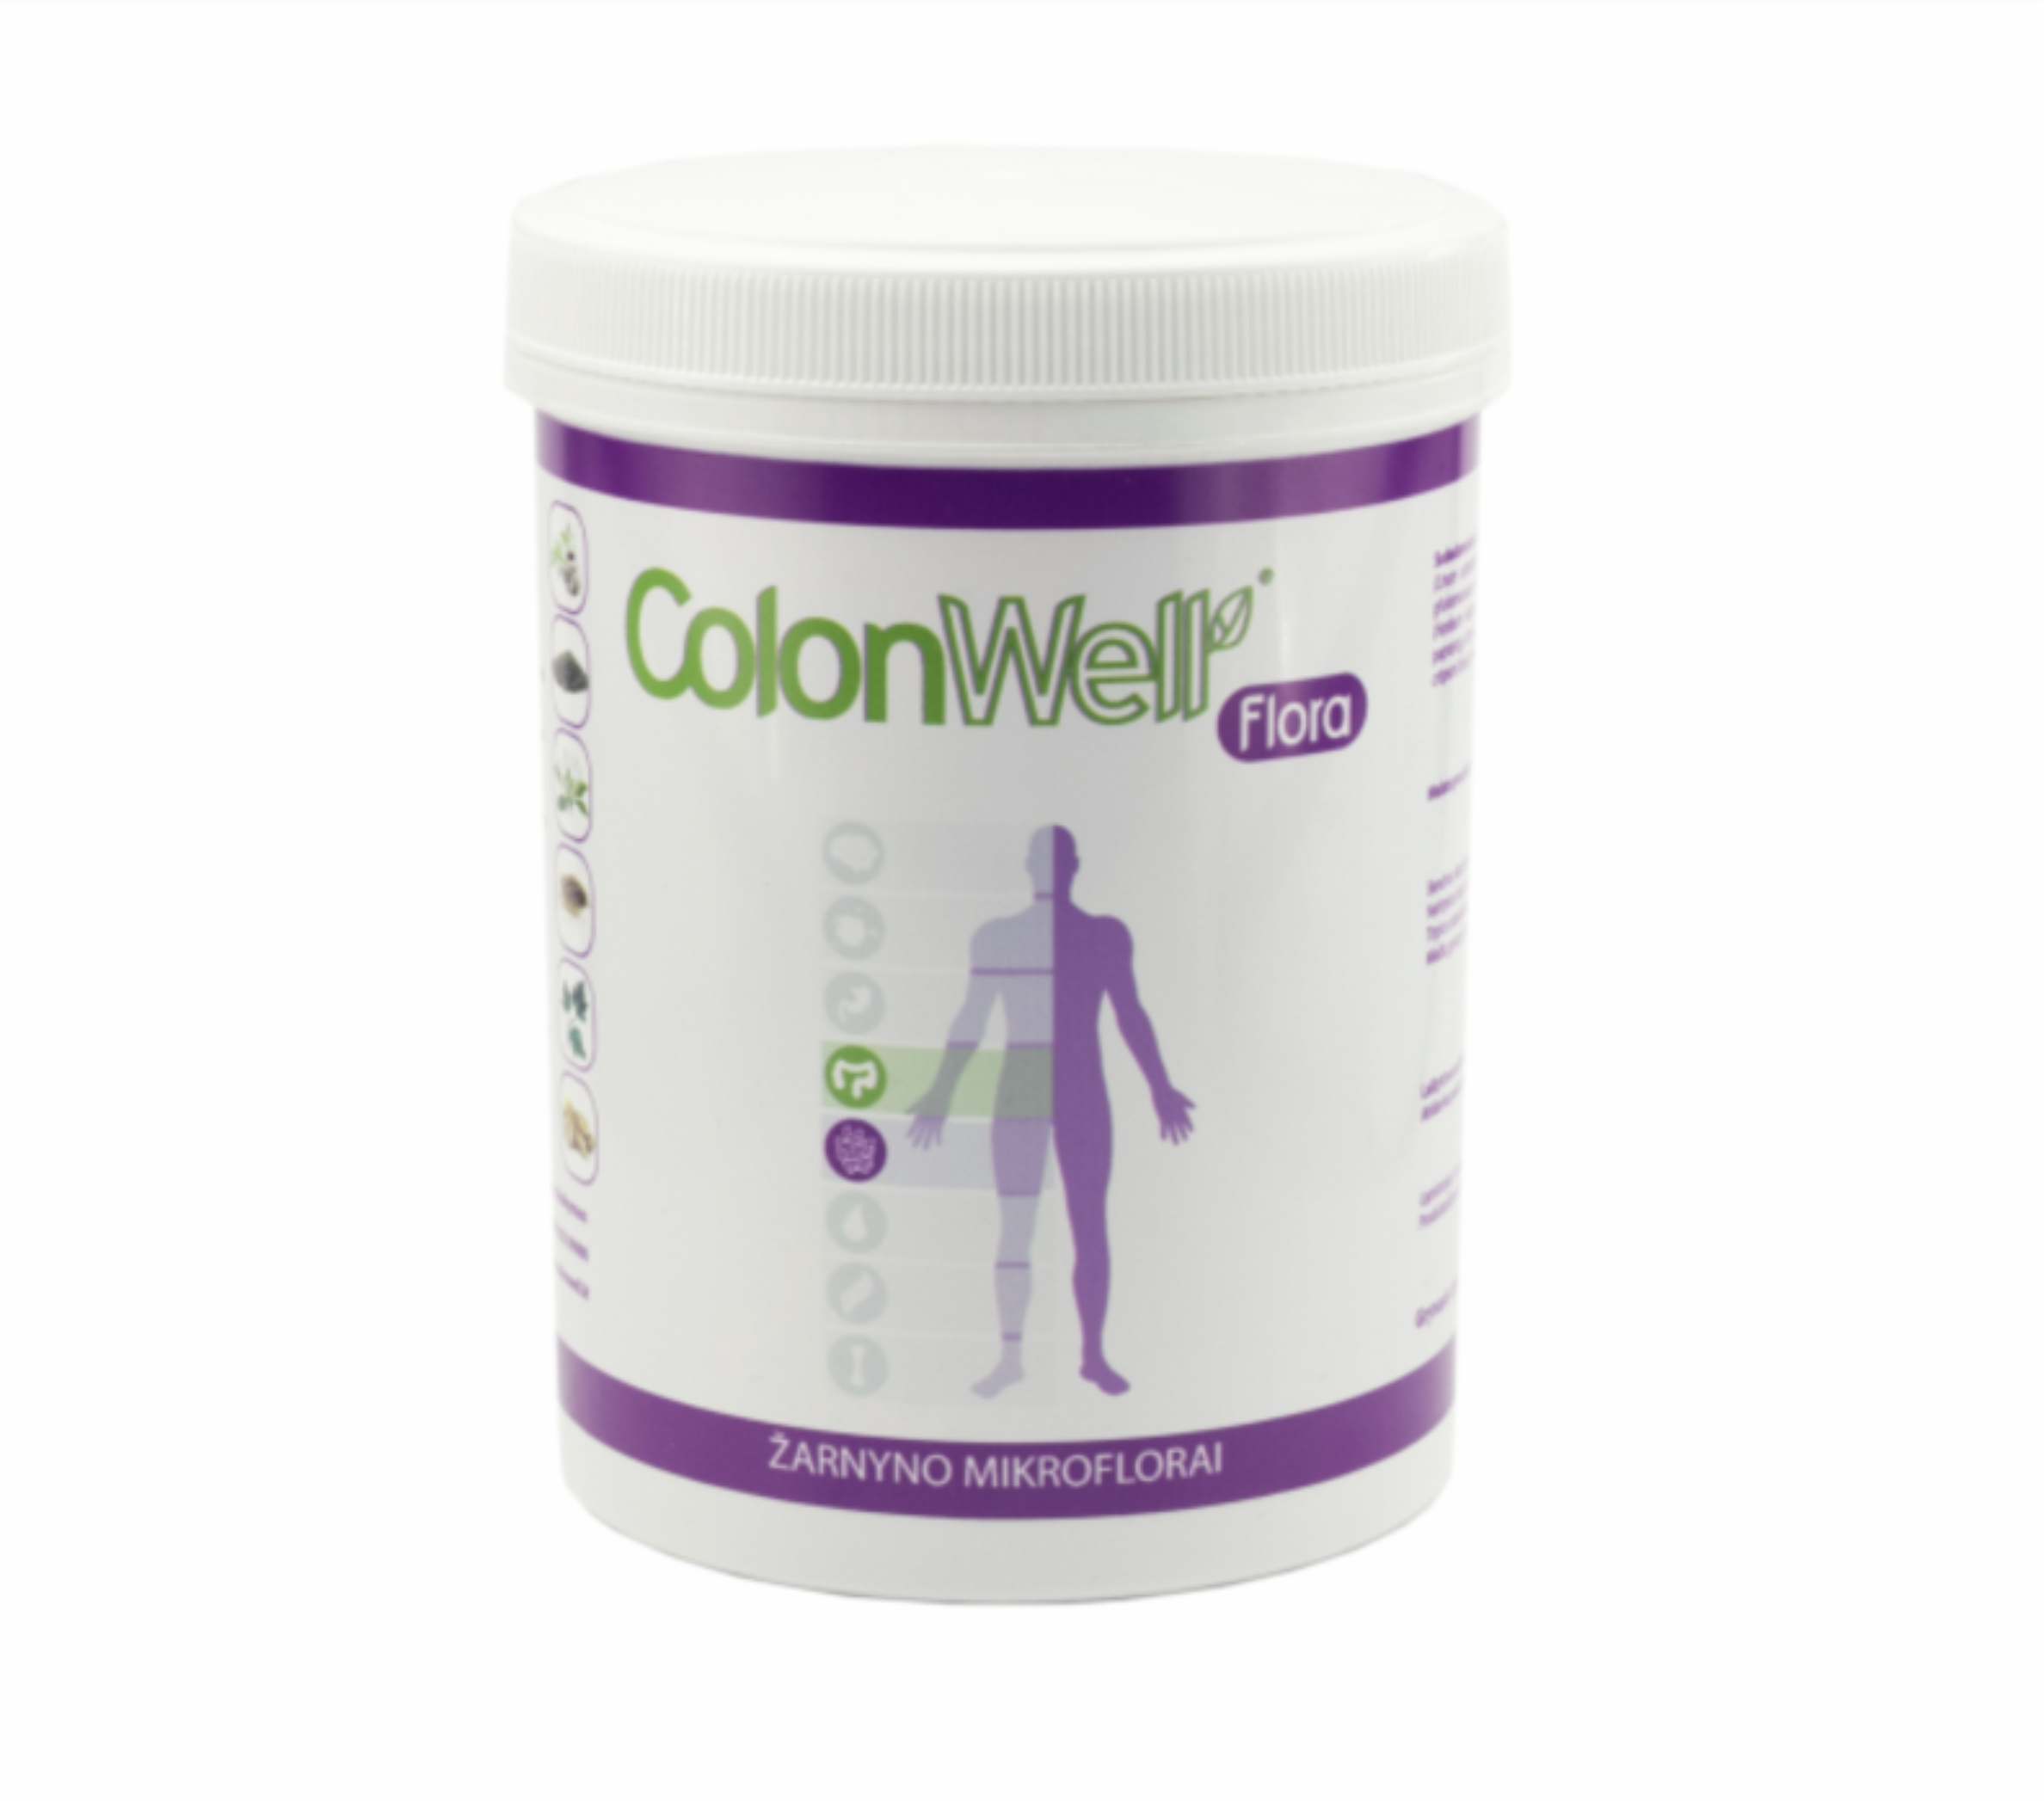 Colonwell.lt produktas - ColonWell Flora - žolelių ir sėklų mišinys su prebiotikais 600g.